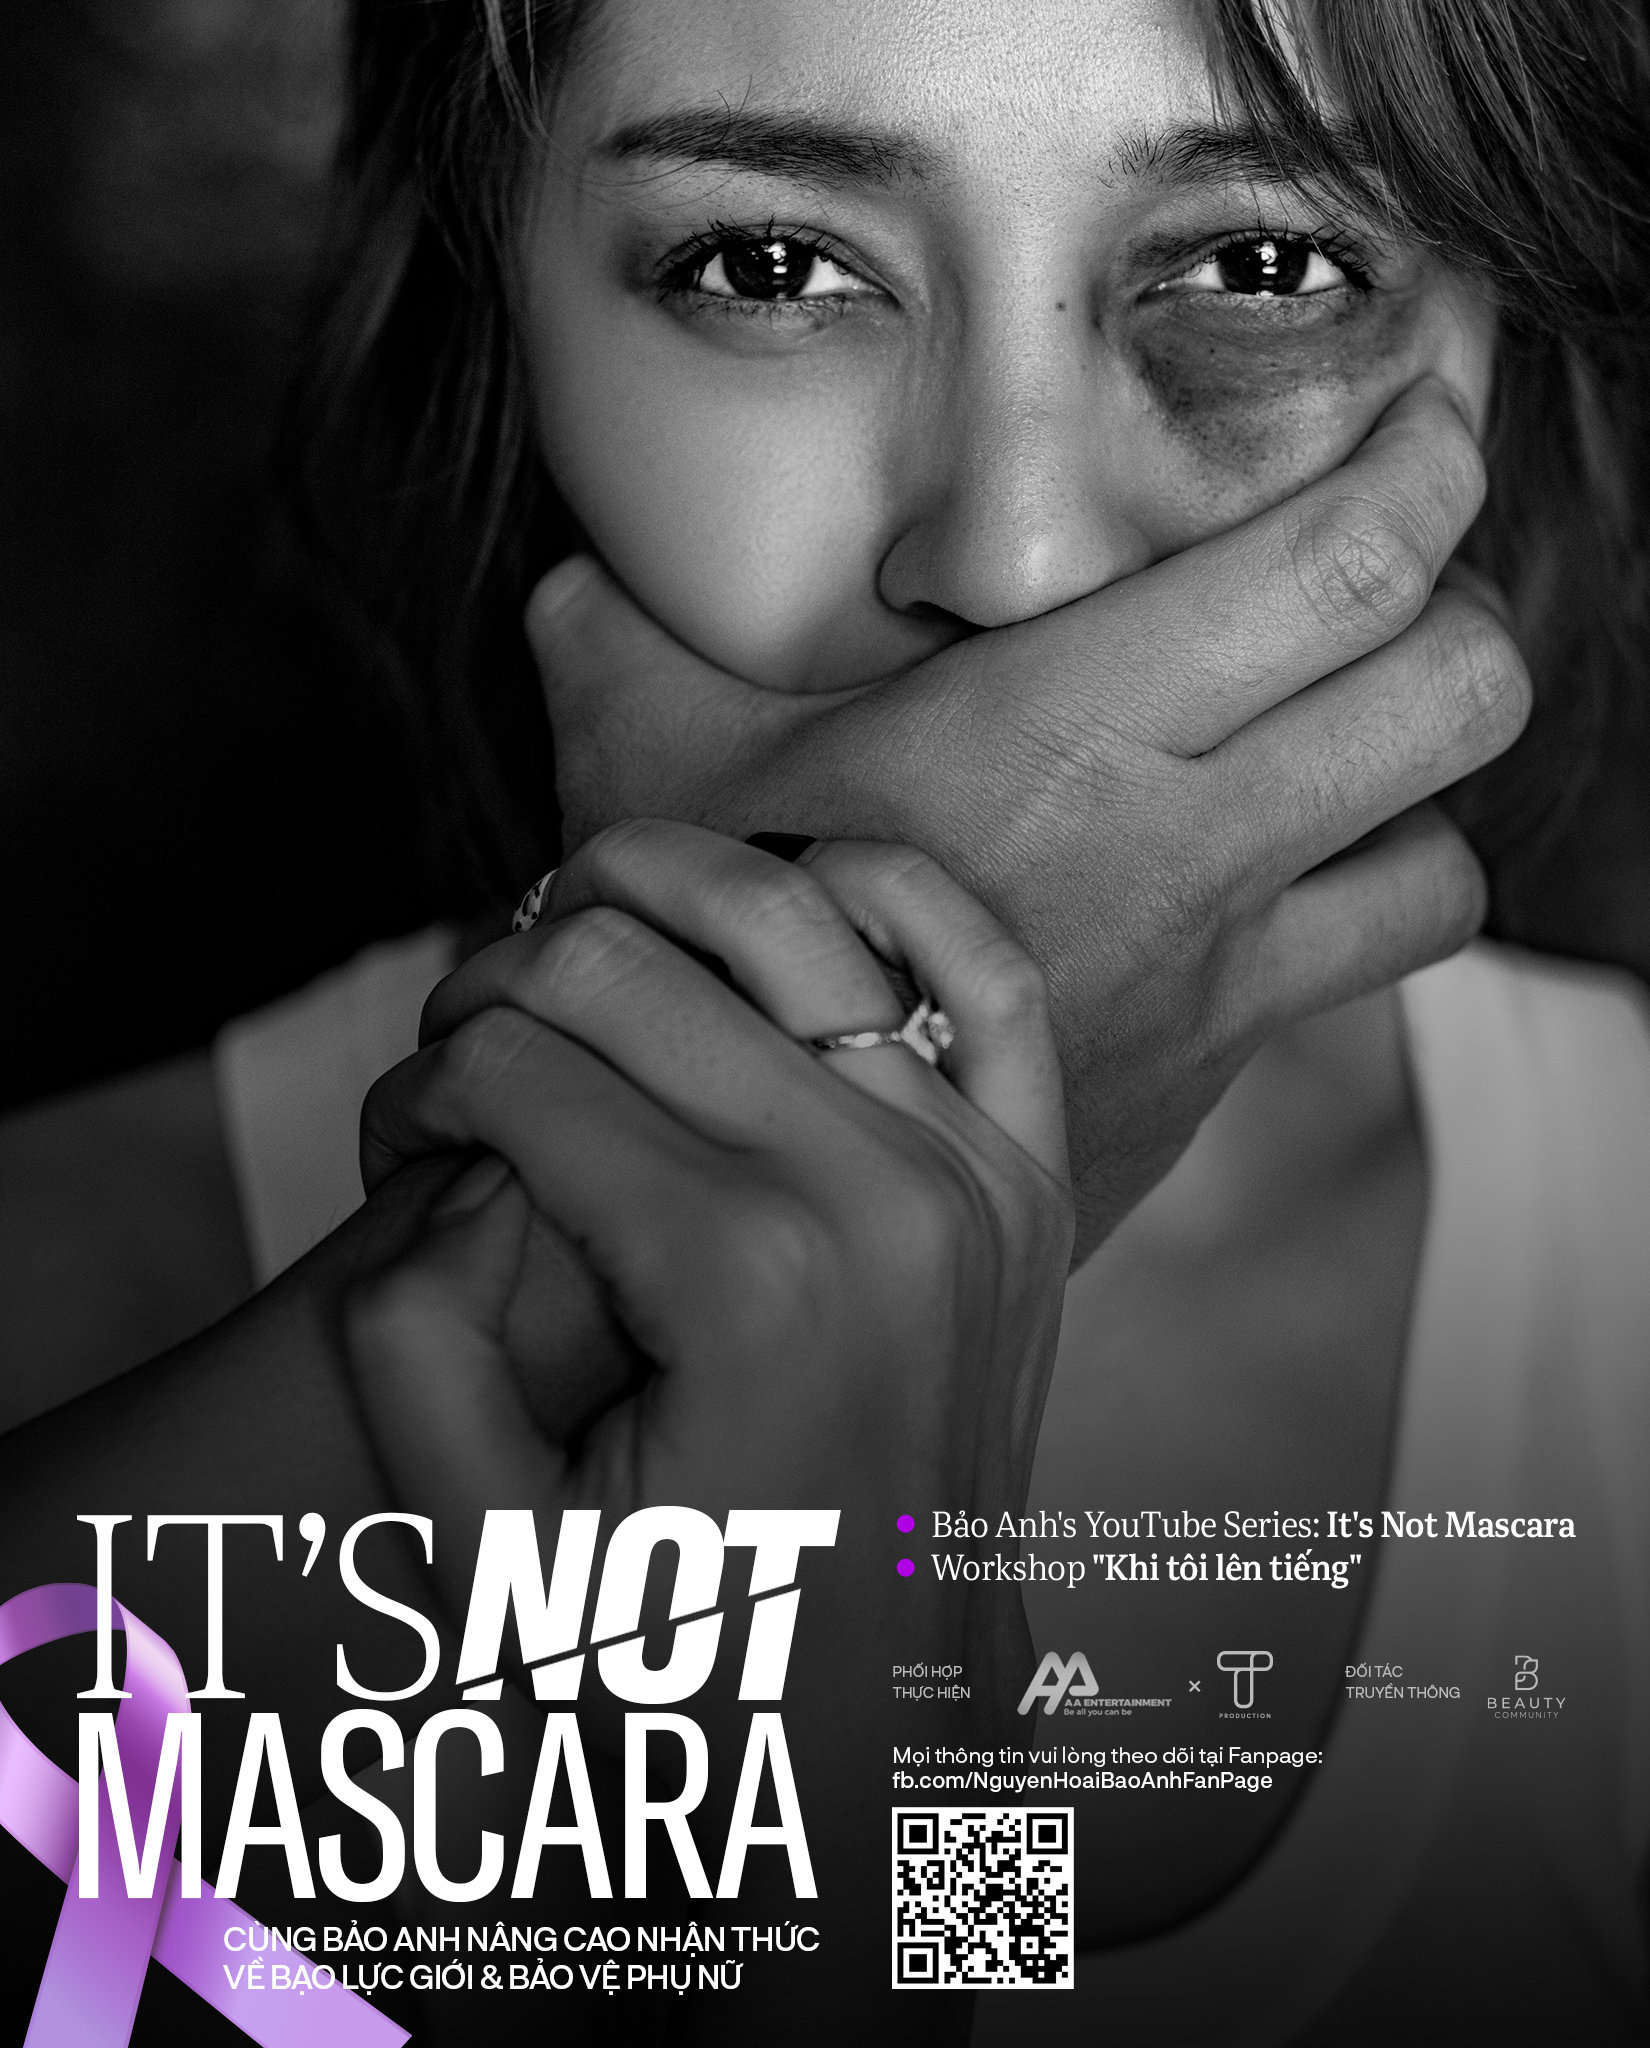 Bảo Anh tung bộ ảnh đầy vết bầm, kêu gọi chiến dịch bảo vệ phụ nữ chống bạo hành